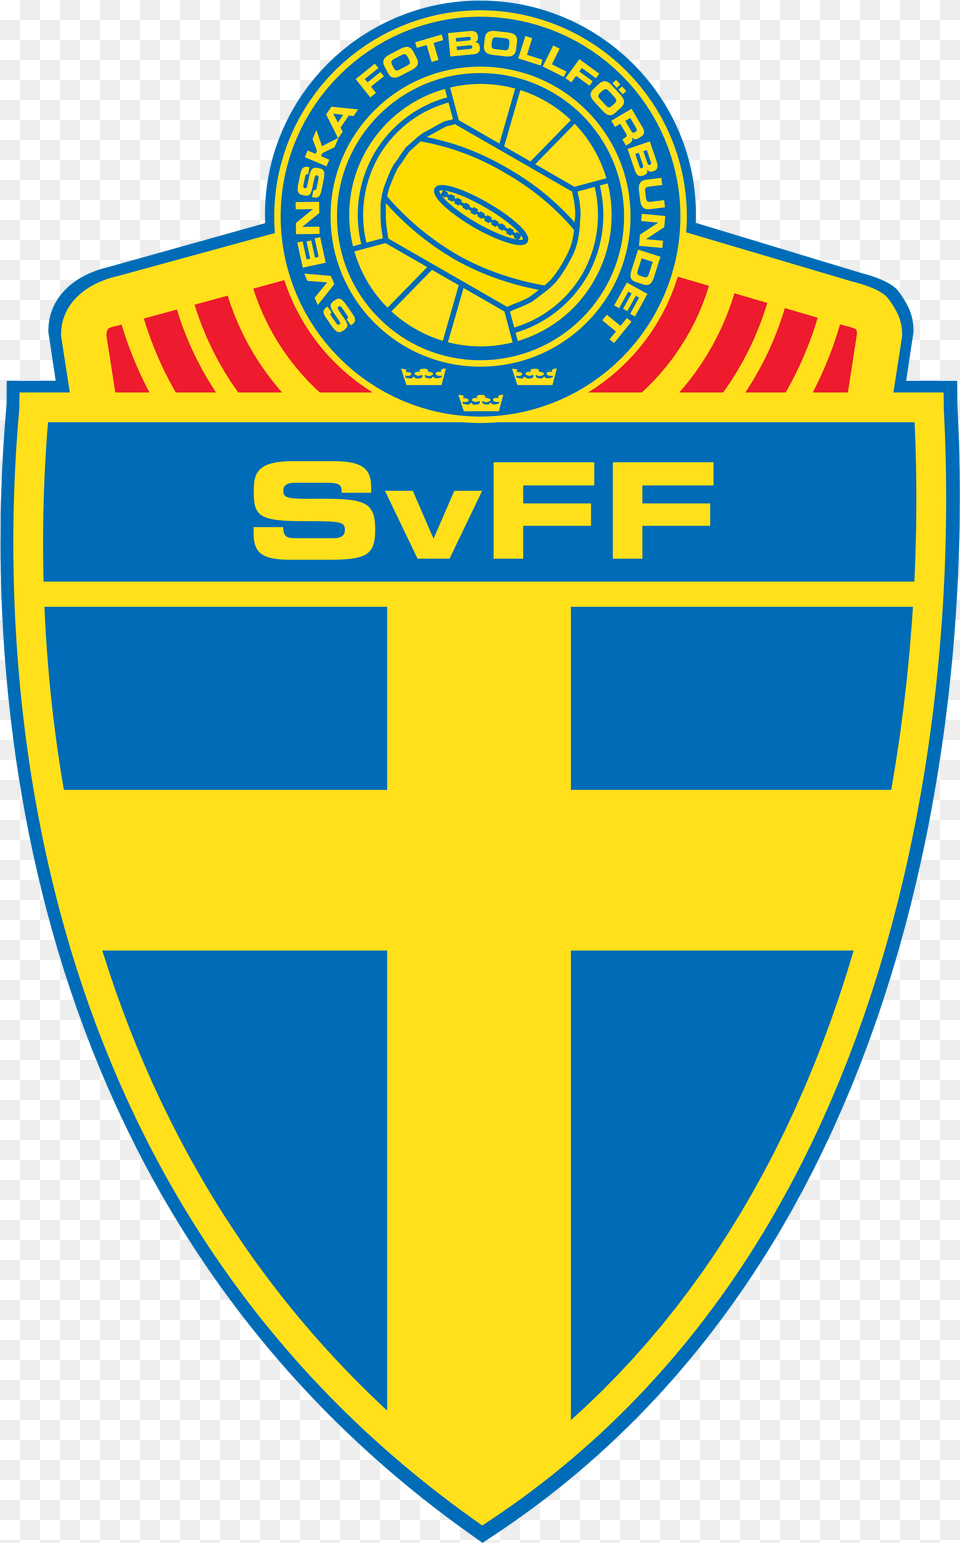 Sweden National Football Team Logo Logo Dream League Soccer 2018 Sweden, Badge, Symbol, Emblem Free Png Download